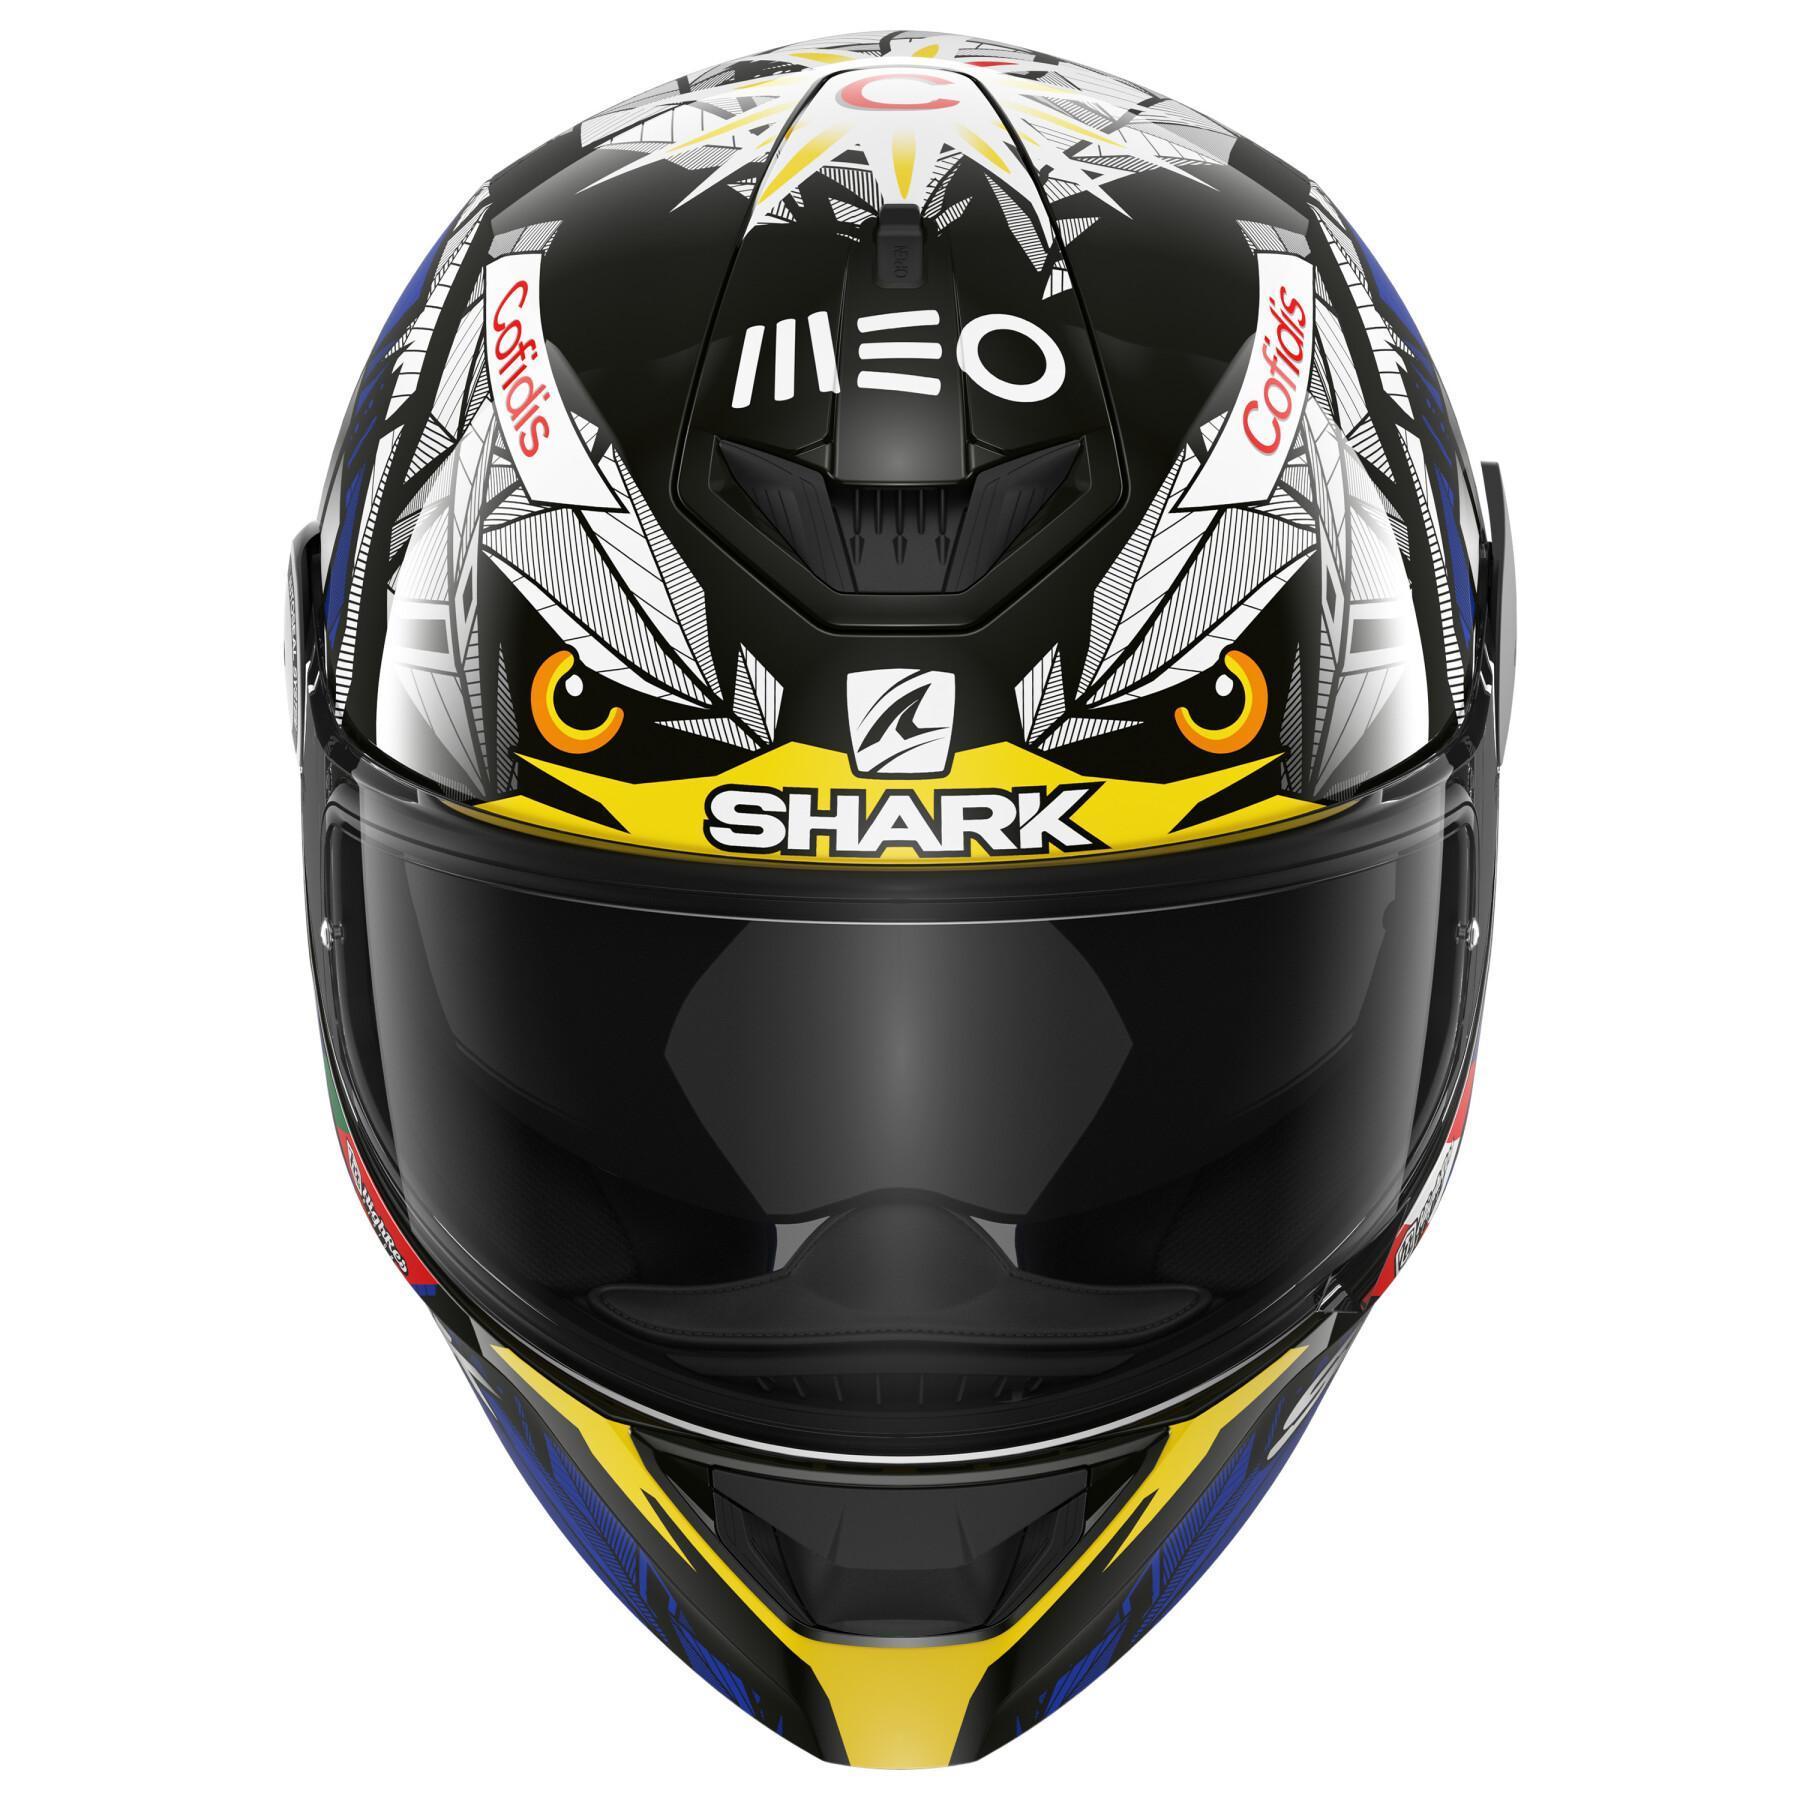 Full face motorcycle helmet Shark d-skwal 2 oliveira falcao